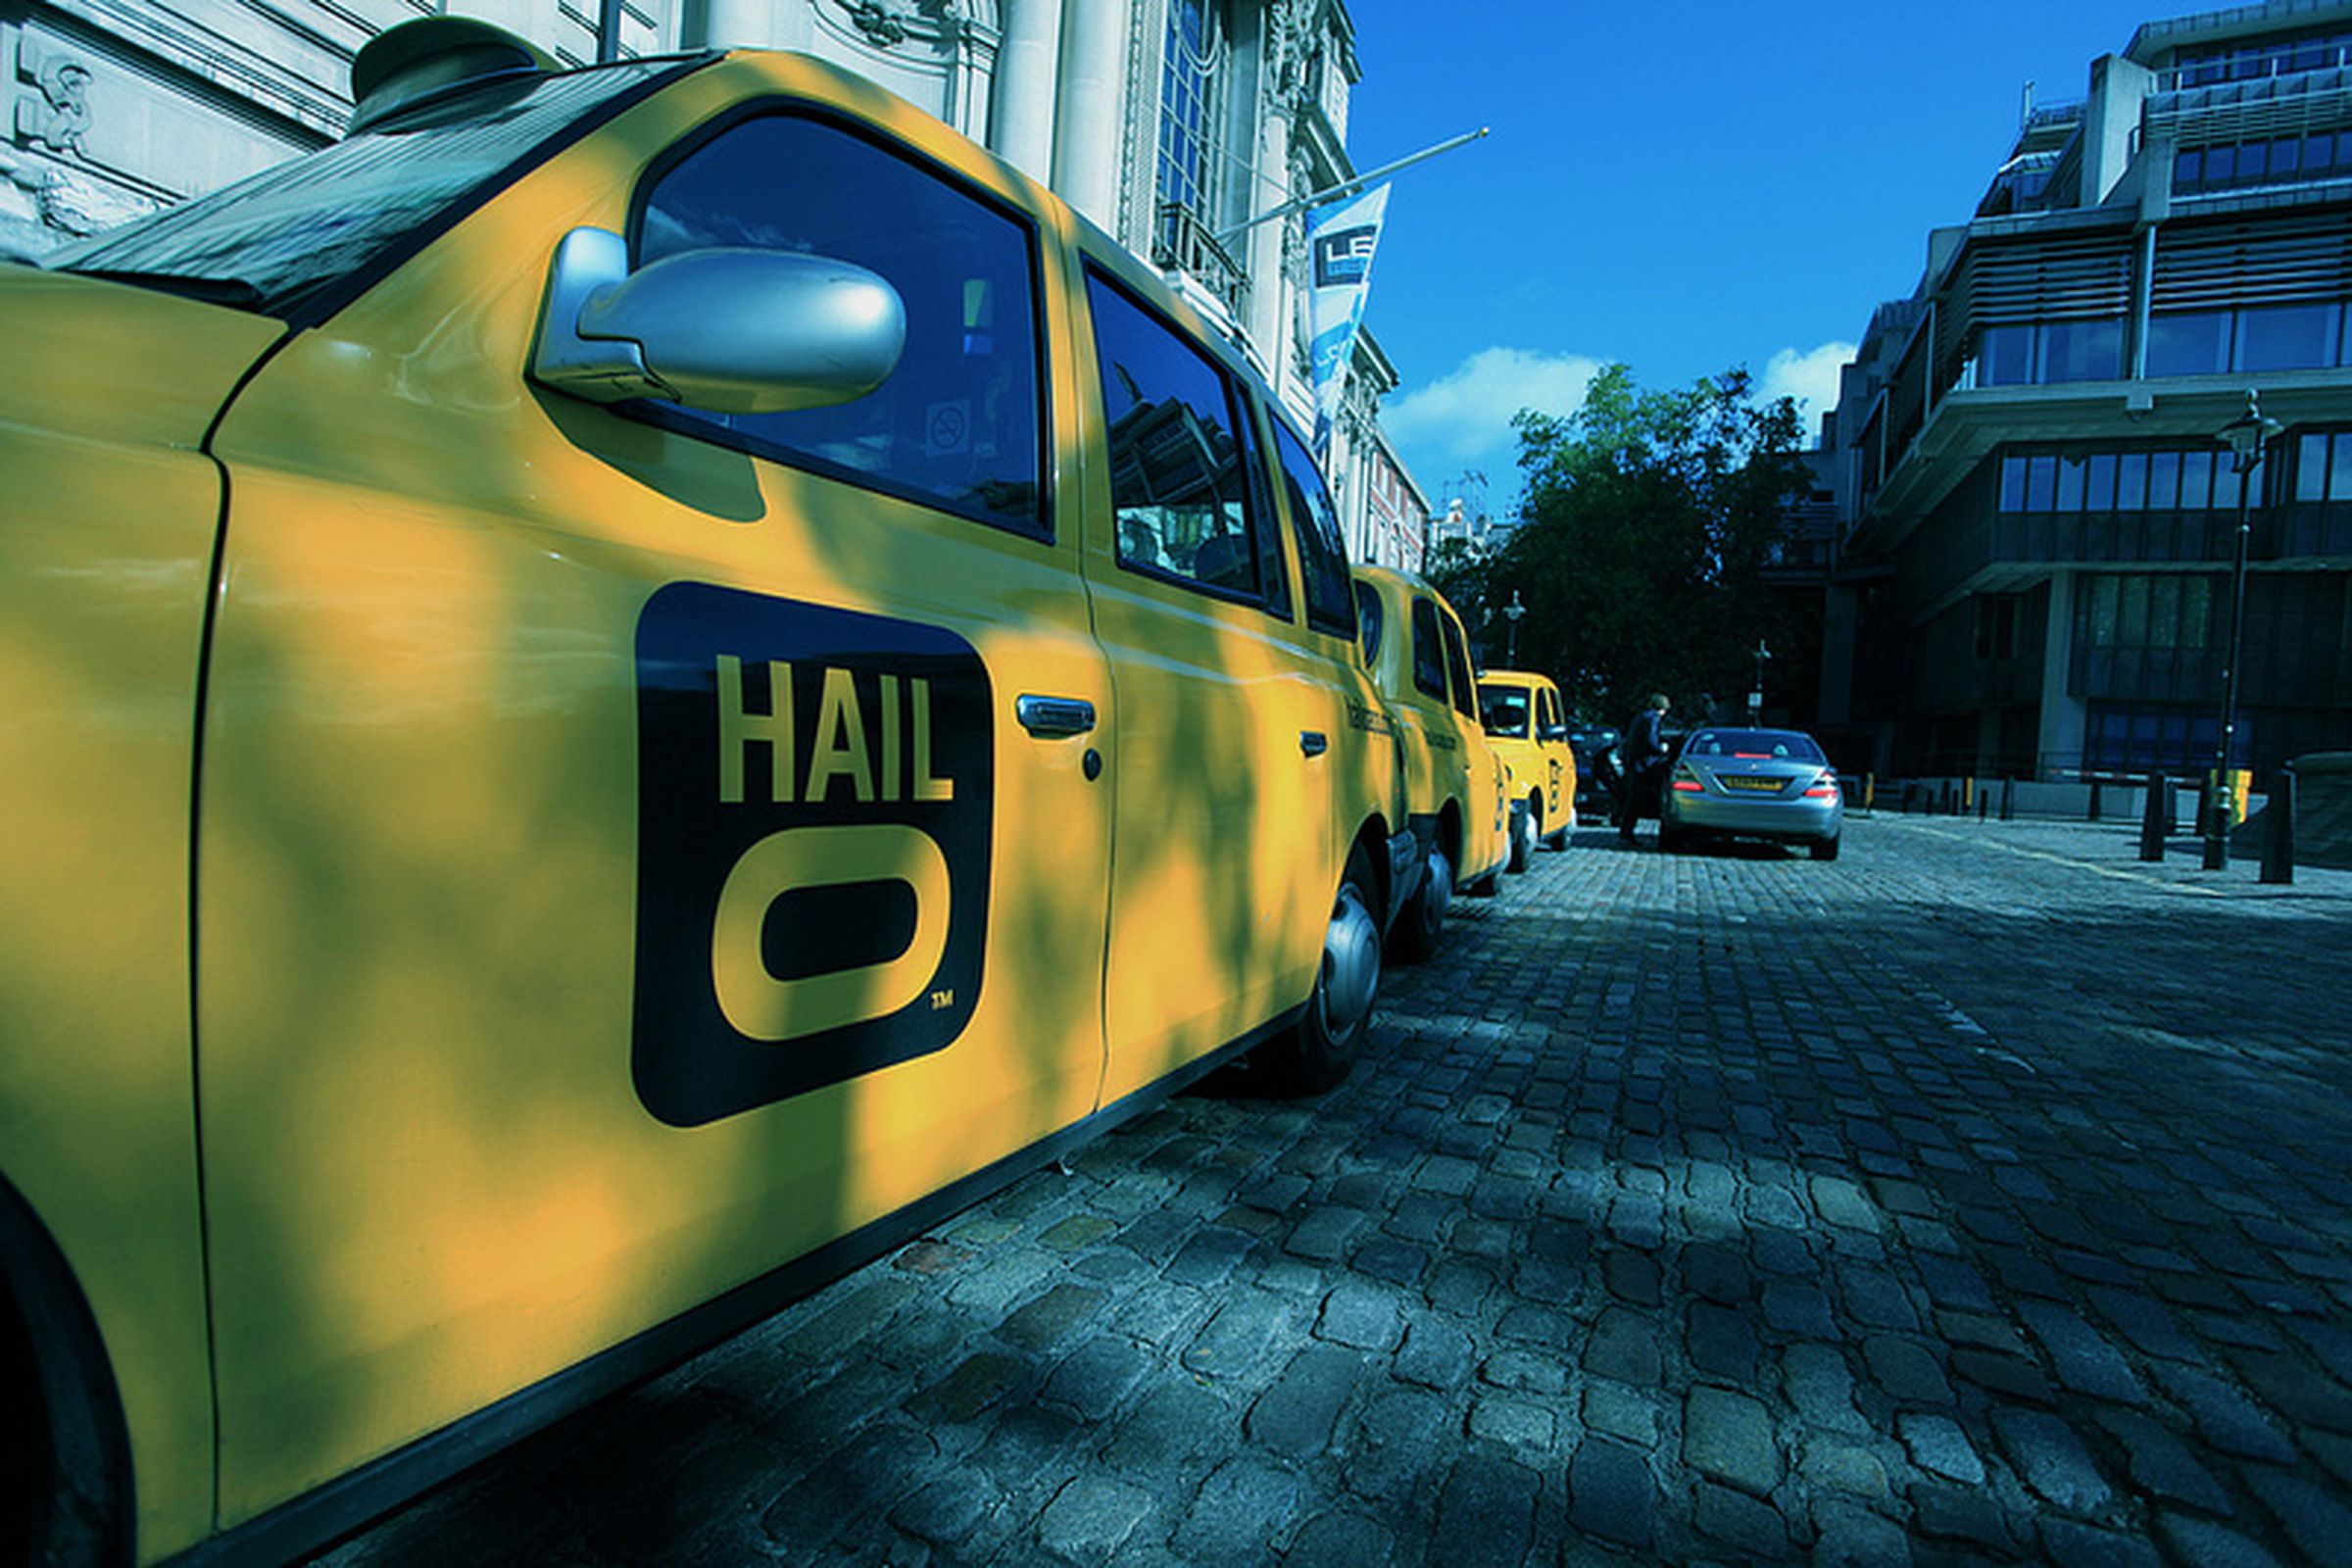 hailo cab